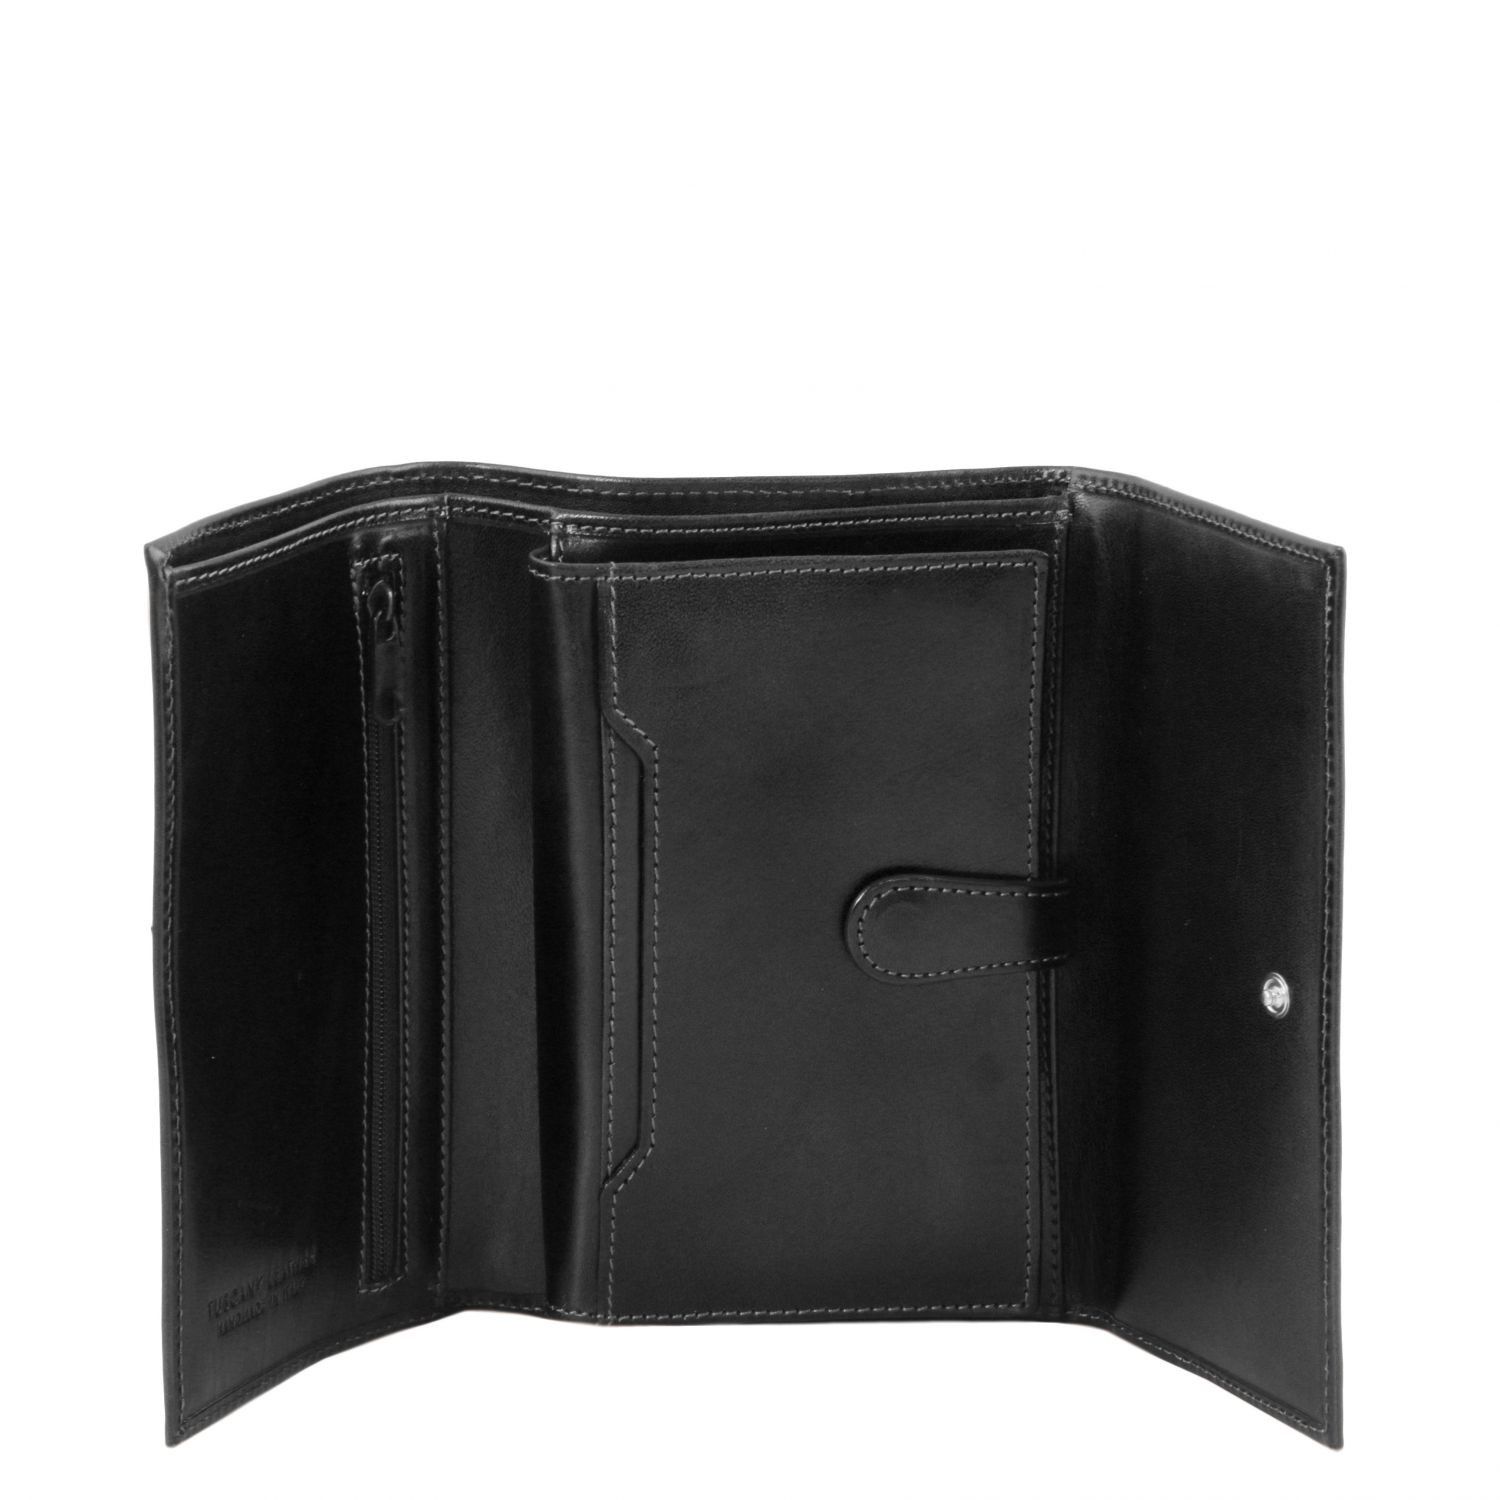 Elégant portefeuille en cuir pour femme 4 volets - Noir (TL140796)